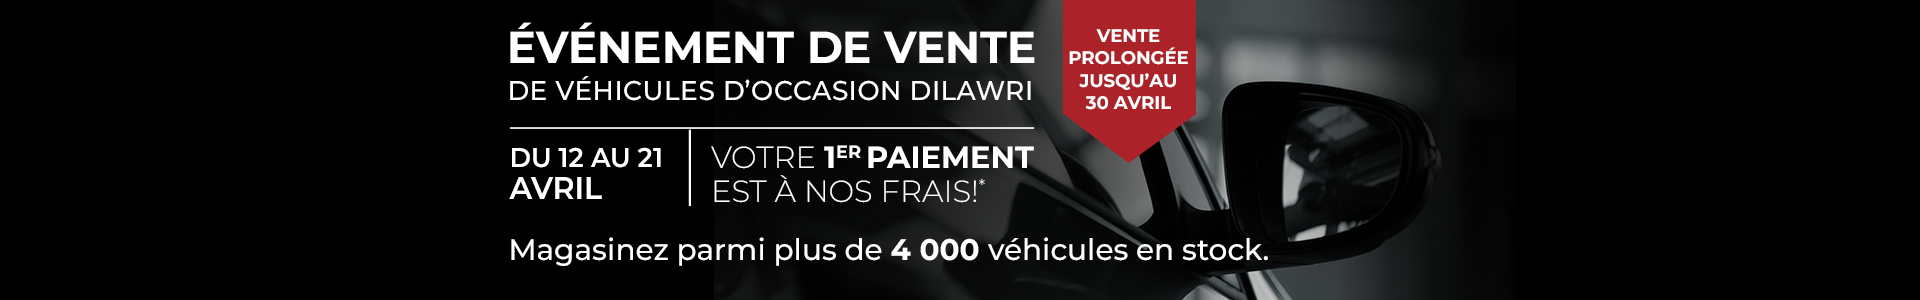 Événement de vente de véhicules d’occasion Dilawri - du 12 au 21 Avril- Votre 1er Paiement est à nos frais!* Magasinez parmi plus de 4 000 véhicules en stock. Vente prolongée justqu'au 30 avril